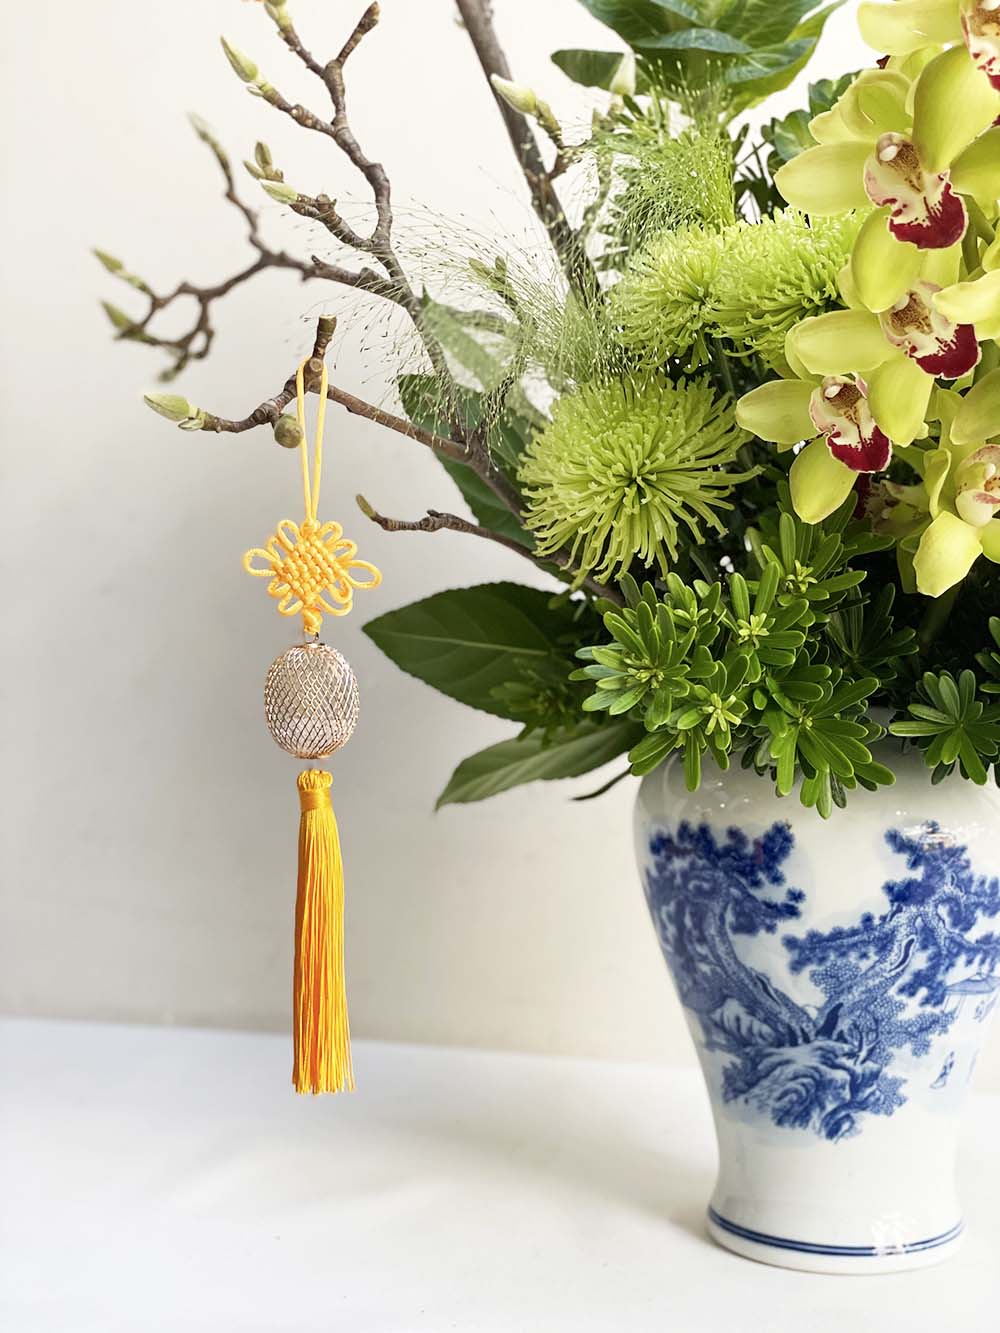 Lunar New Year Flower Arrangement “Peace” – Design 4